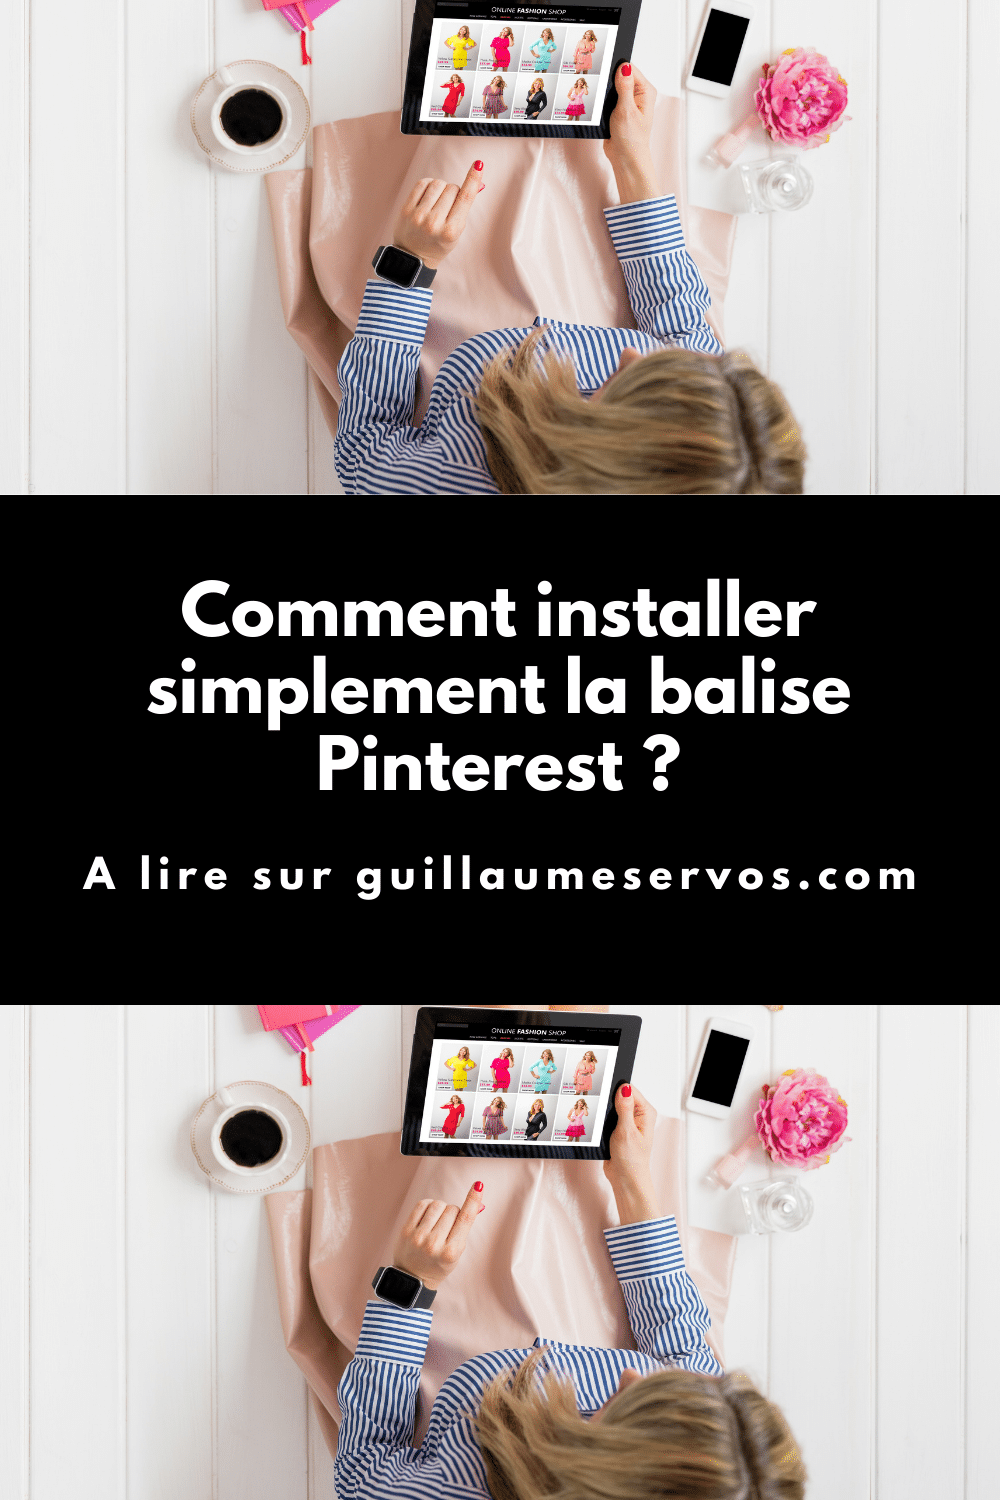 Découvre comment installer simplement la balise Pinterest sur ton site pour suivre le comportement des visiteurs et suivre tes conversions.